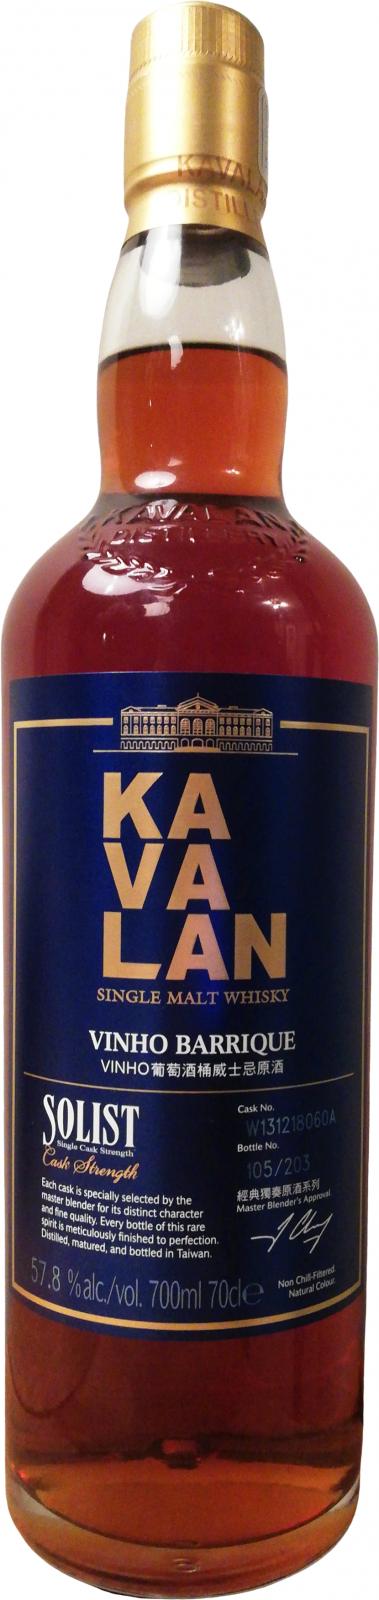 Kavalan Solist wine Barrique W131218060A 57.8% 700ml